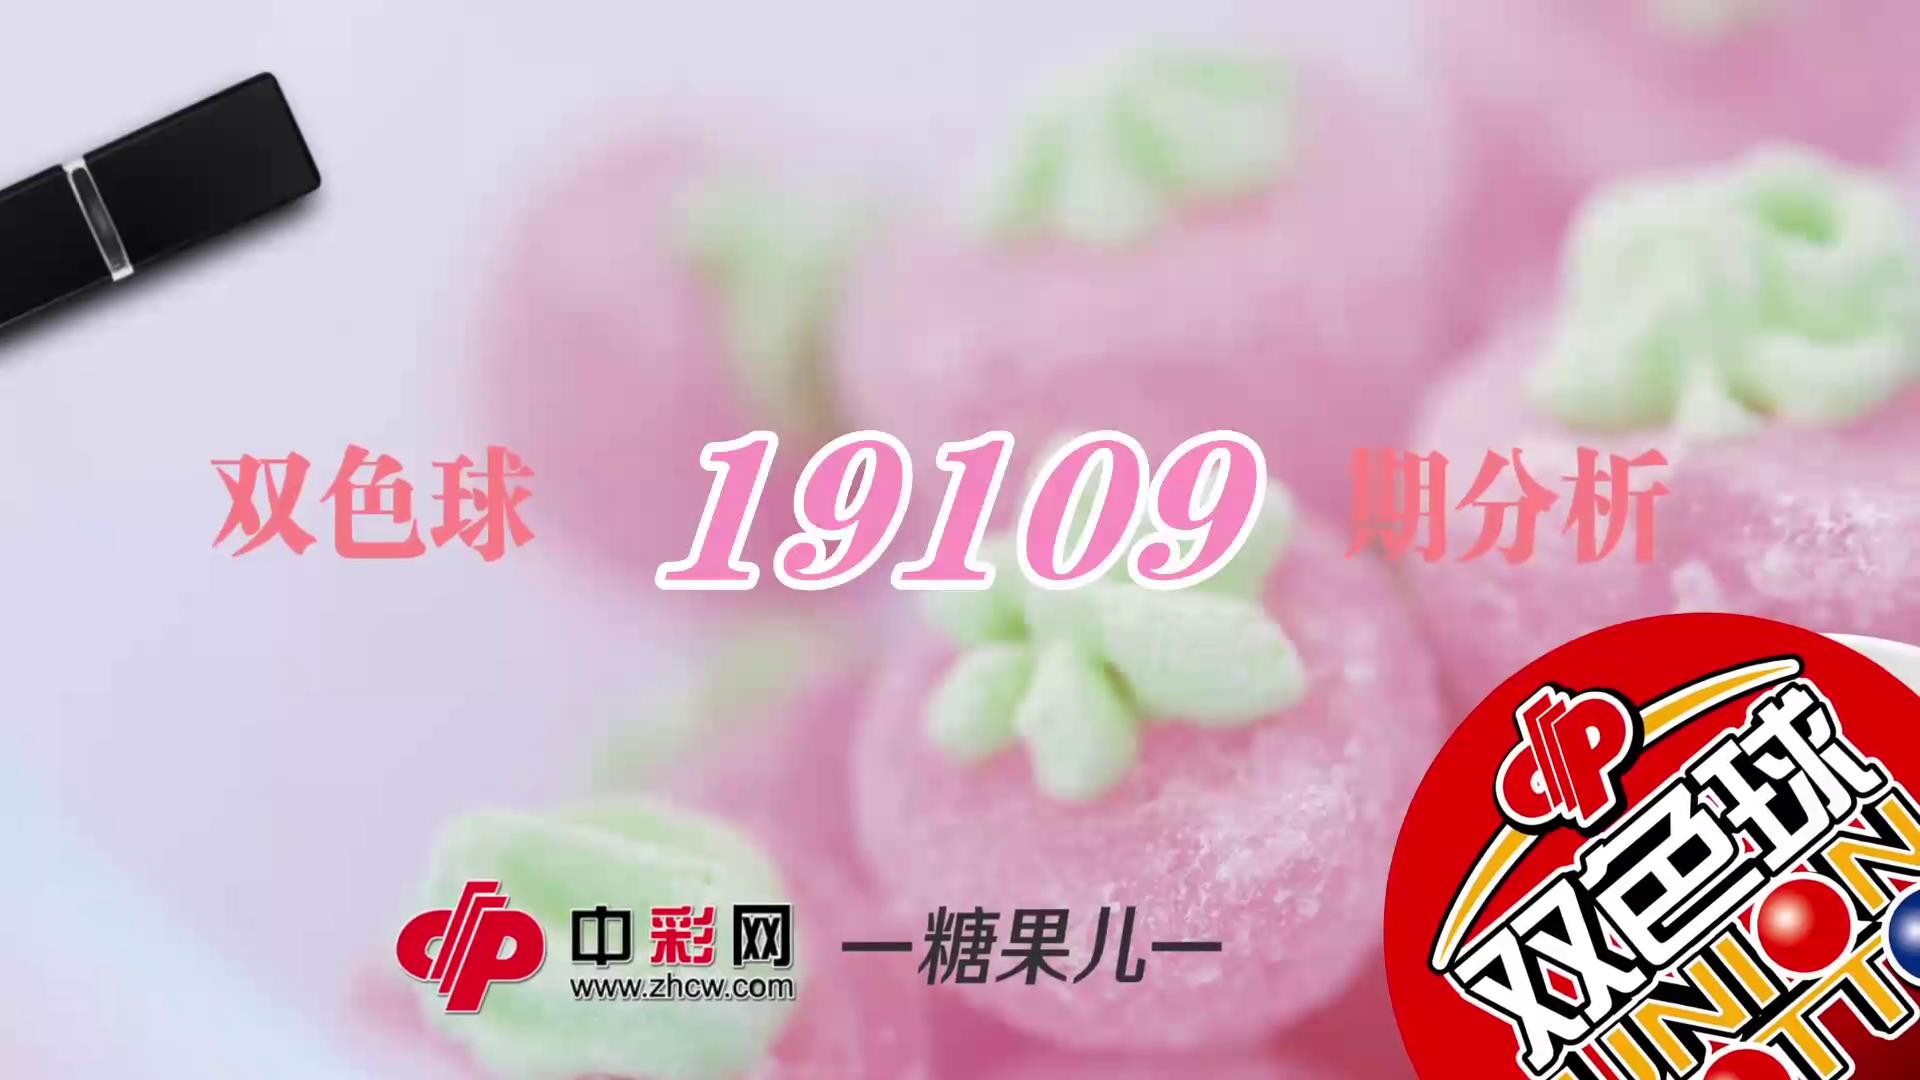 【中彩视频】糖果儿双色球第19109期